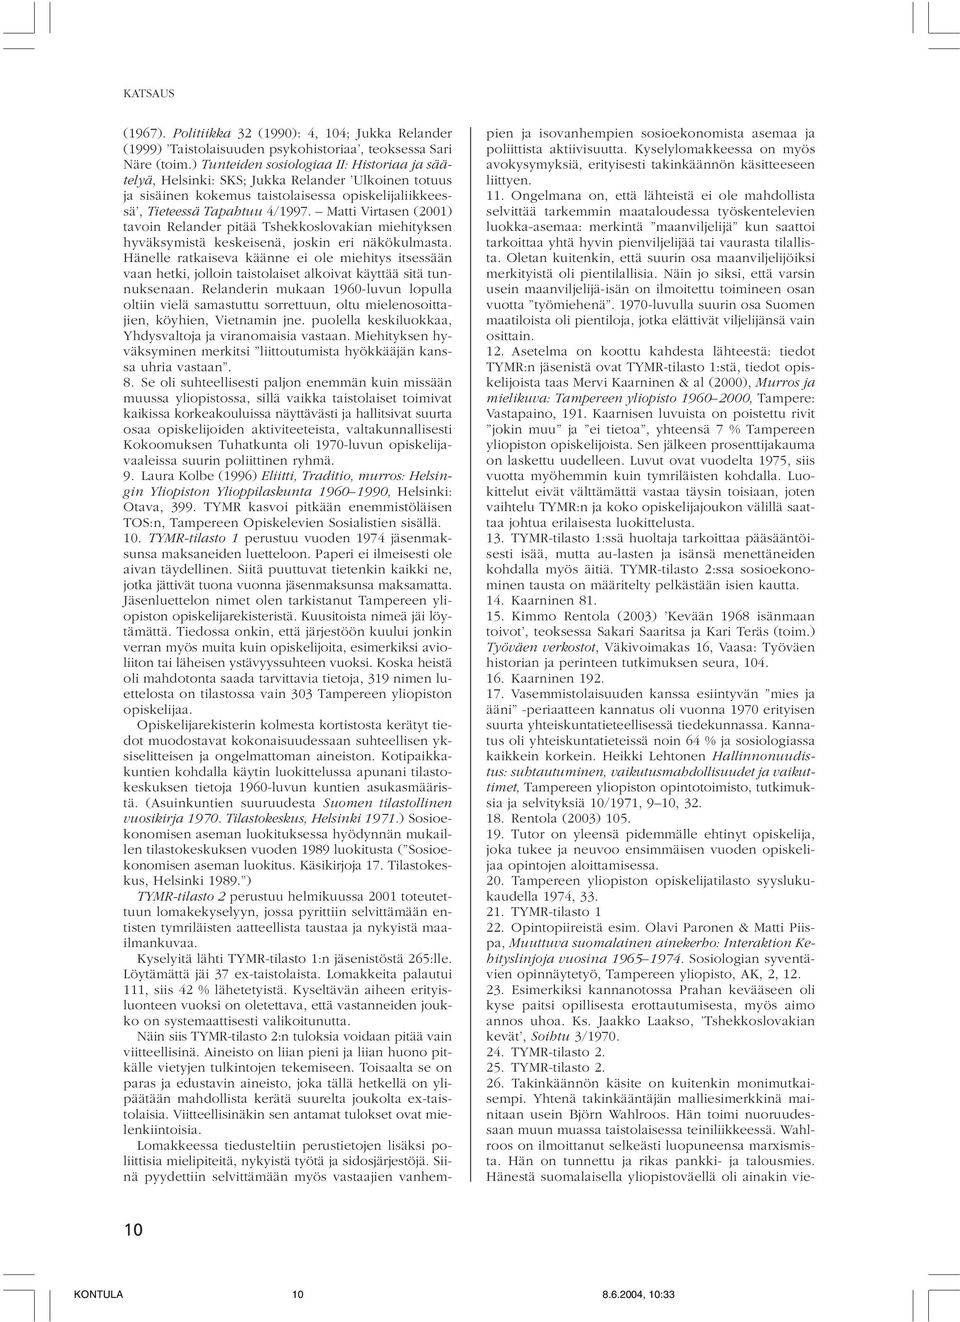 Matti Virtasen (2001) tavoin Relander pitää Tshekkoslovakian miehityksen hyväksymistä keskeisenä, joskin eri näkökulmasta.